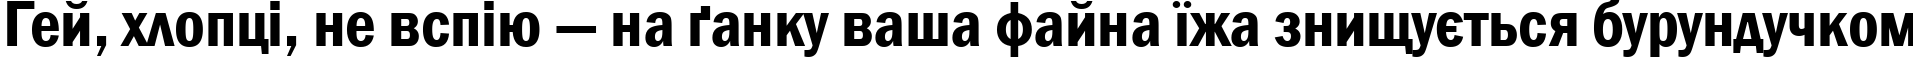 Пример написания шрифтом font153 текста на украинском